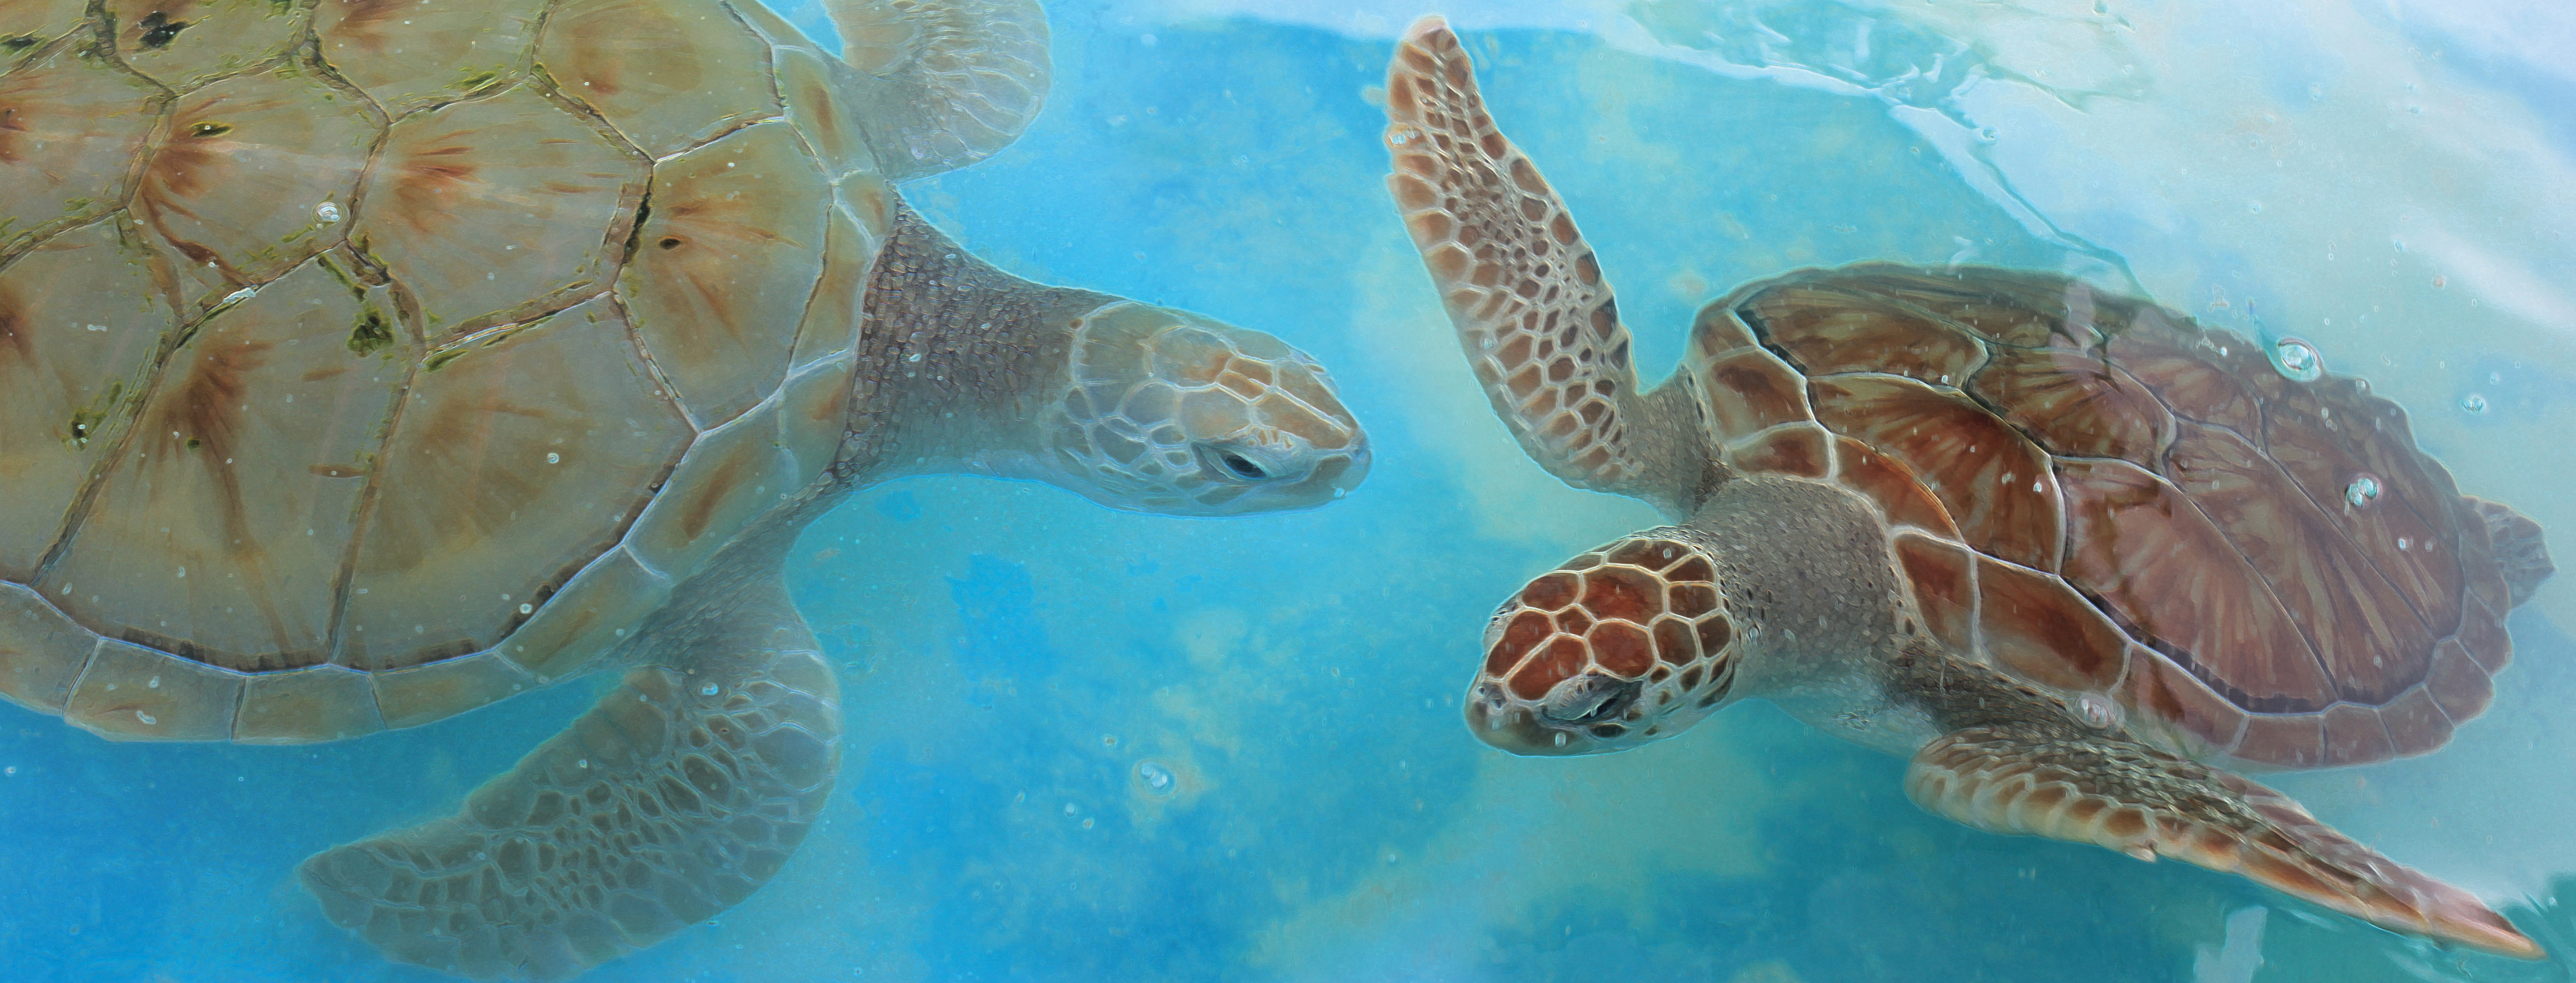 Danza de las Tortugas - Dancing Turtles of the Caribbean Oceans - Original underwater photos by Marcy Ann VIllafana